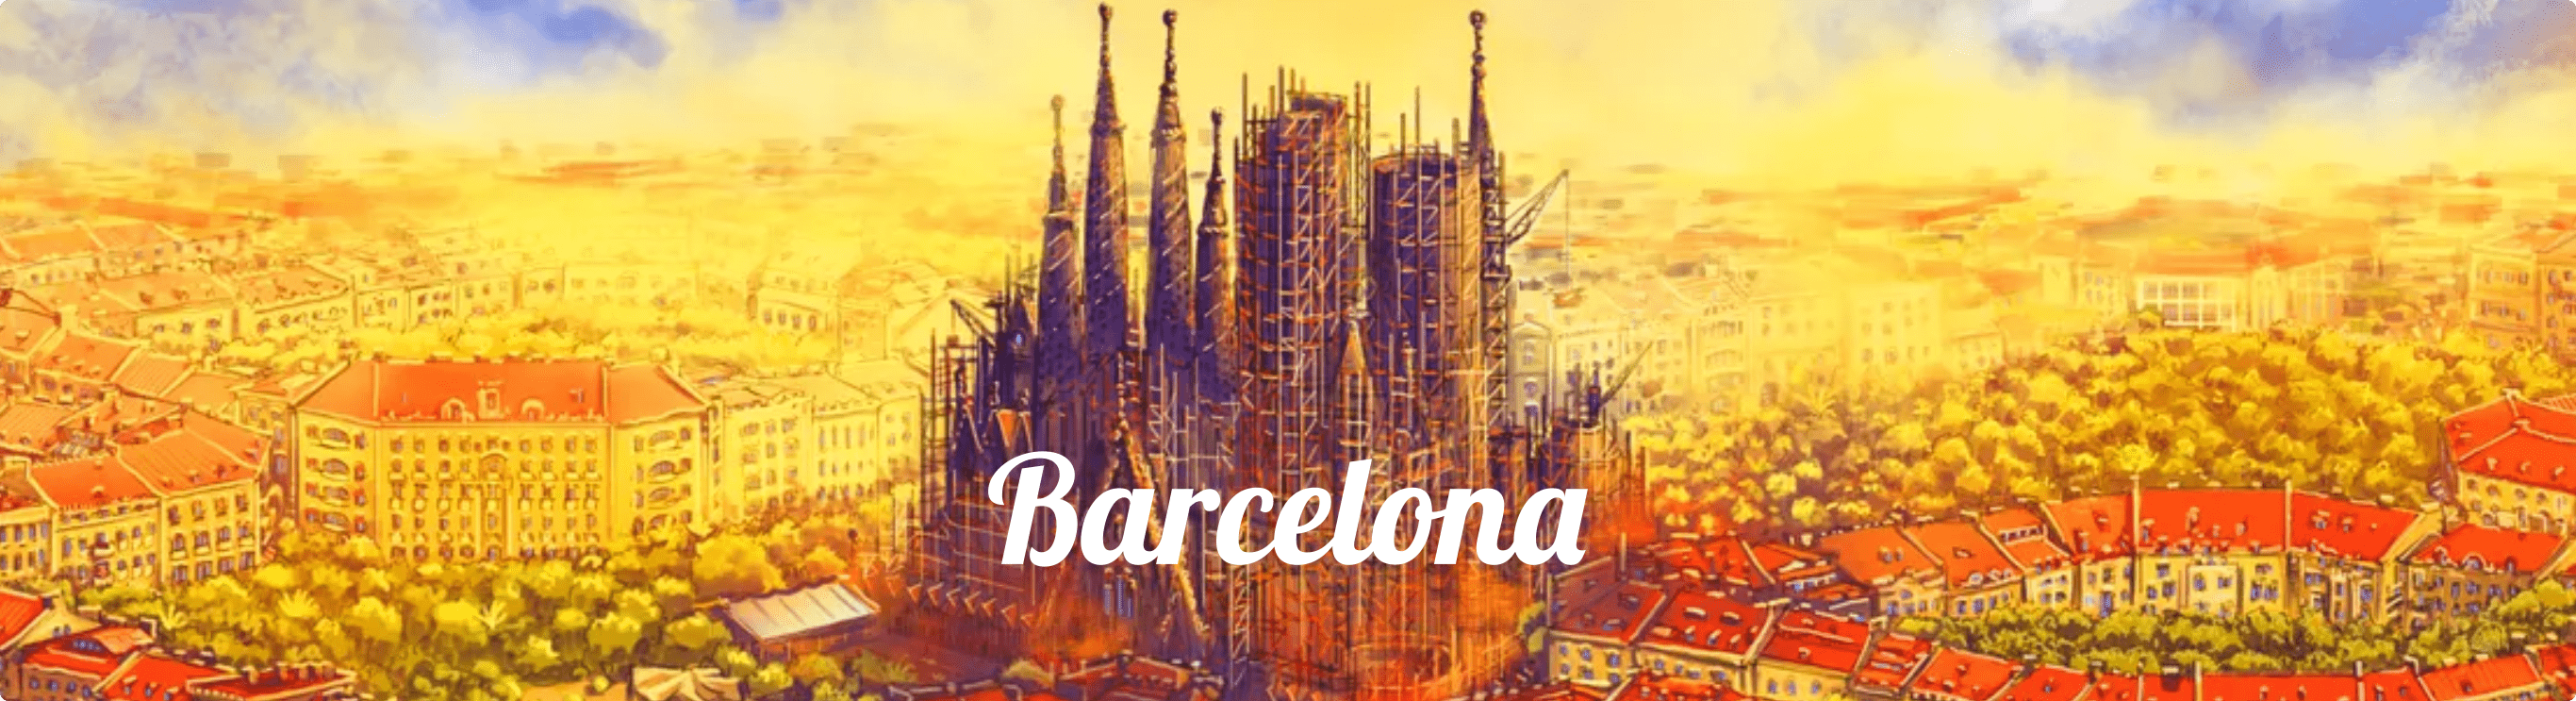 BarcelonaBordspelBeoordelingBanner